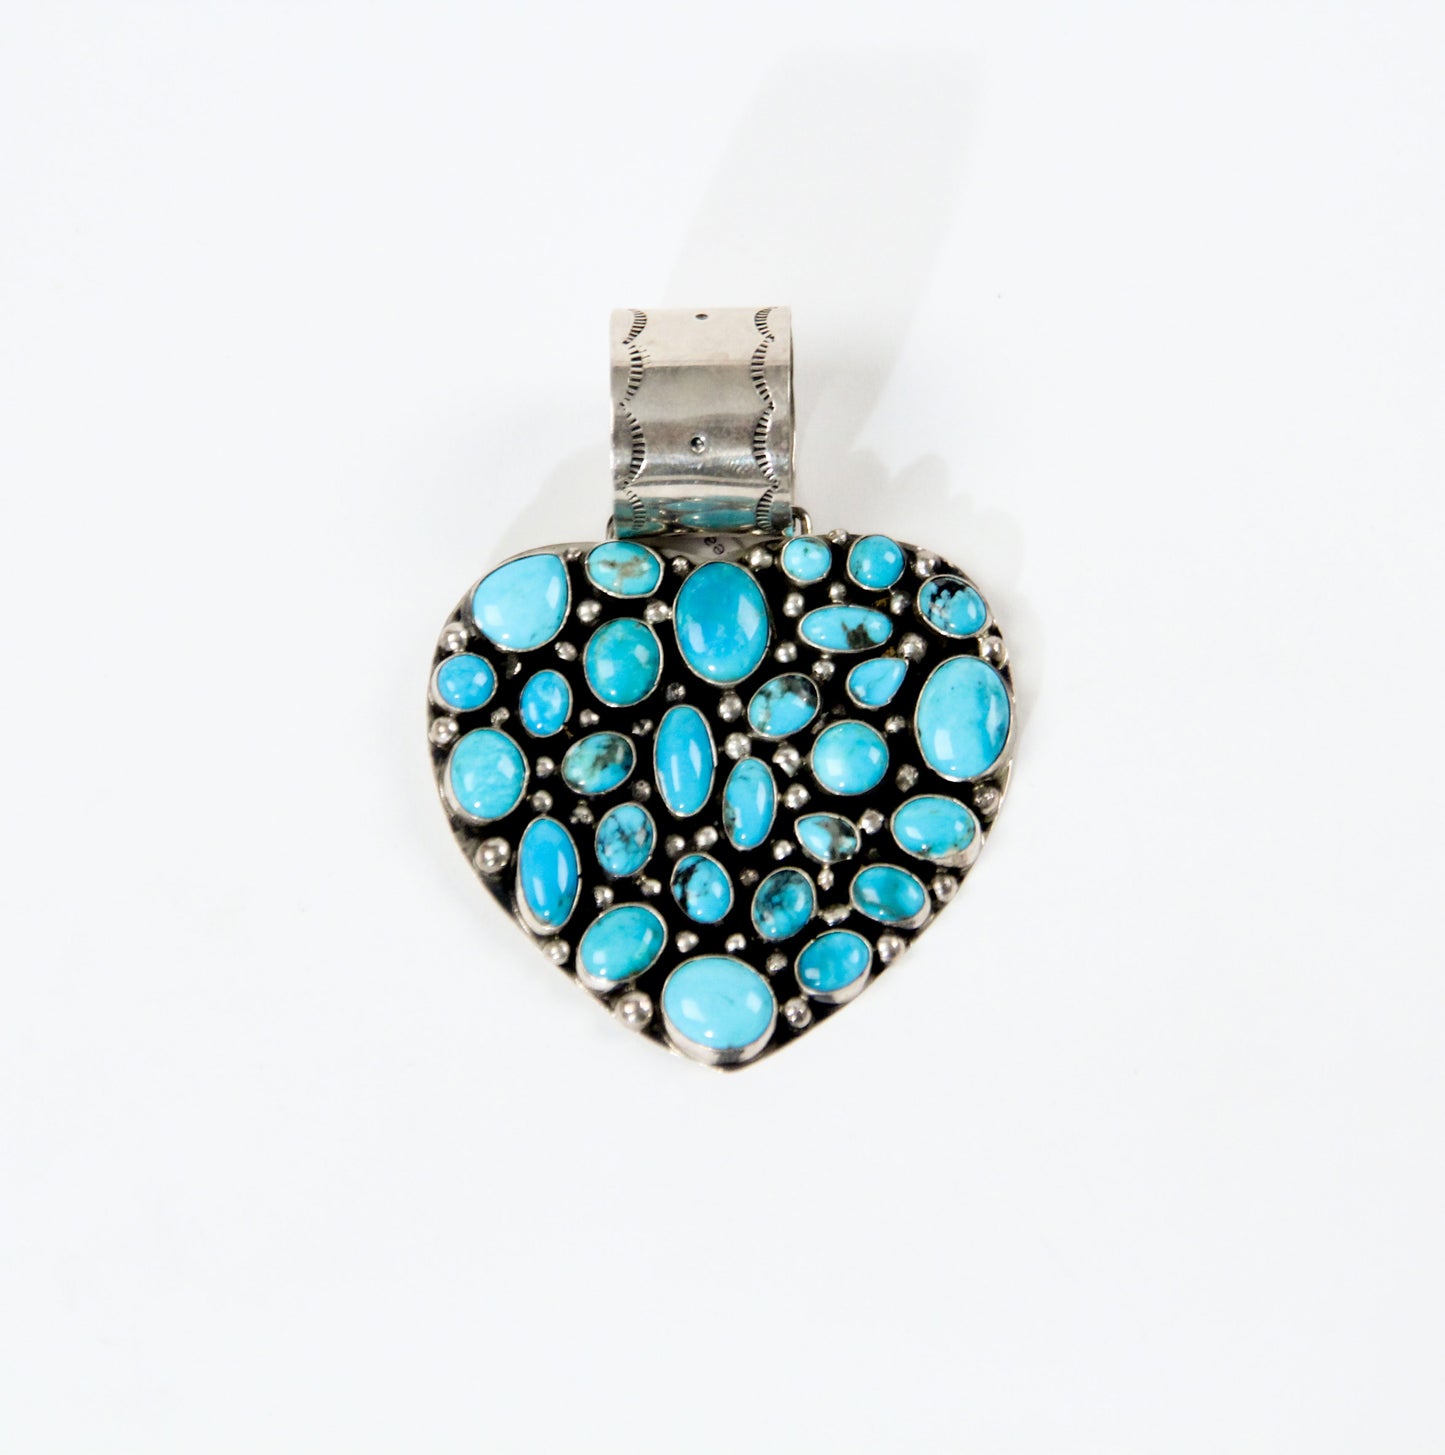 Turquoise heart pendant Rocki Gorman bold statement jewelry women western southwestern blue